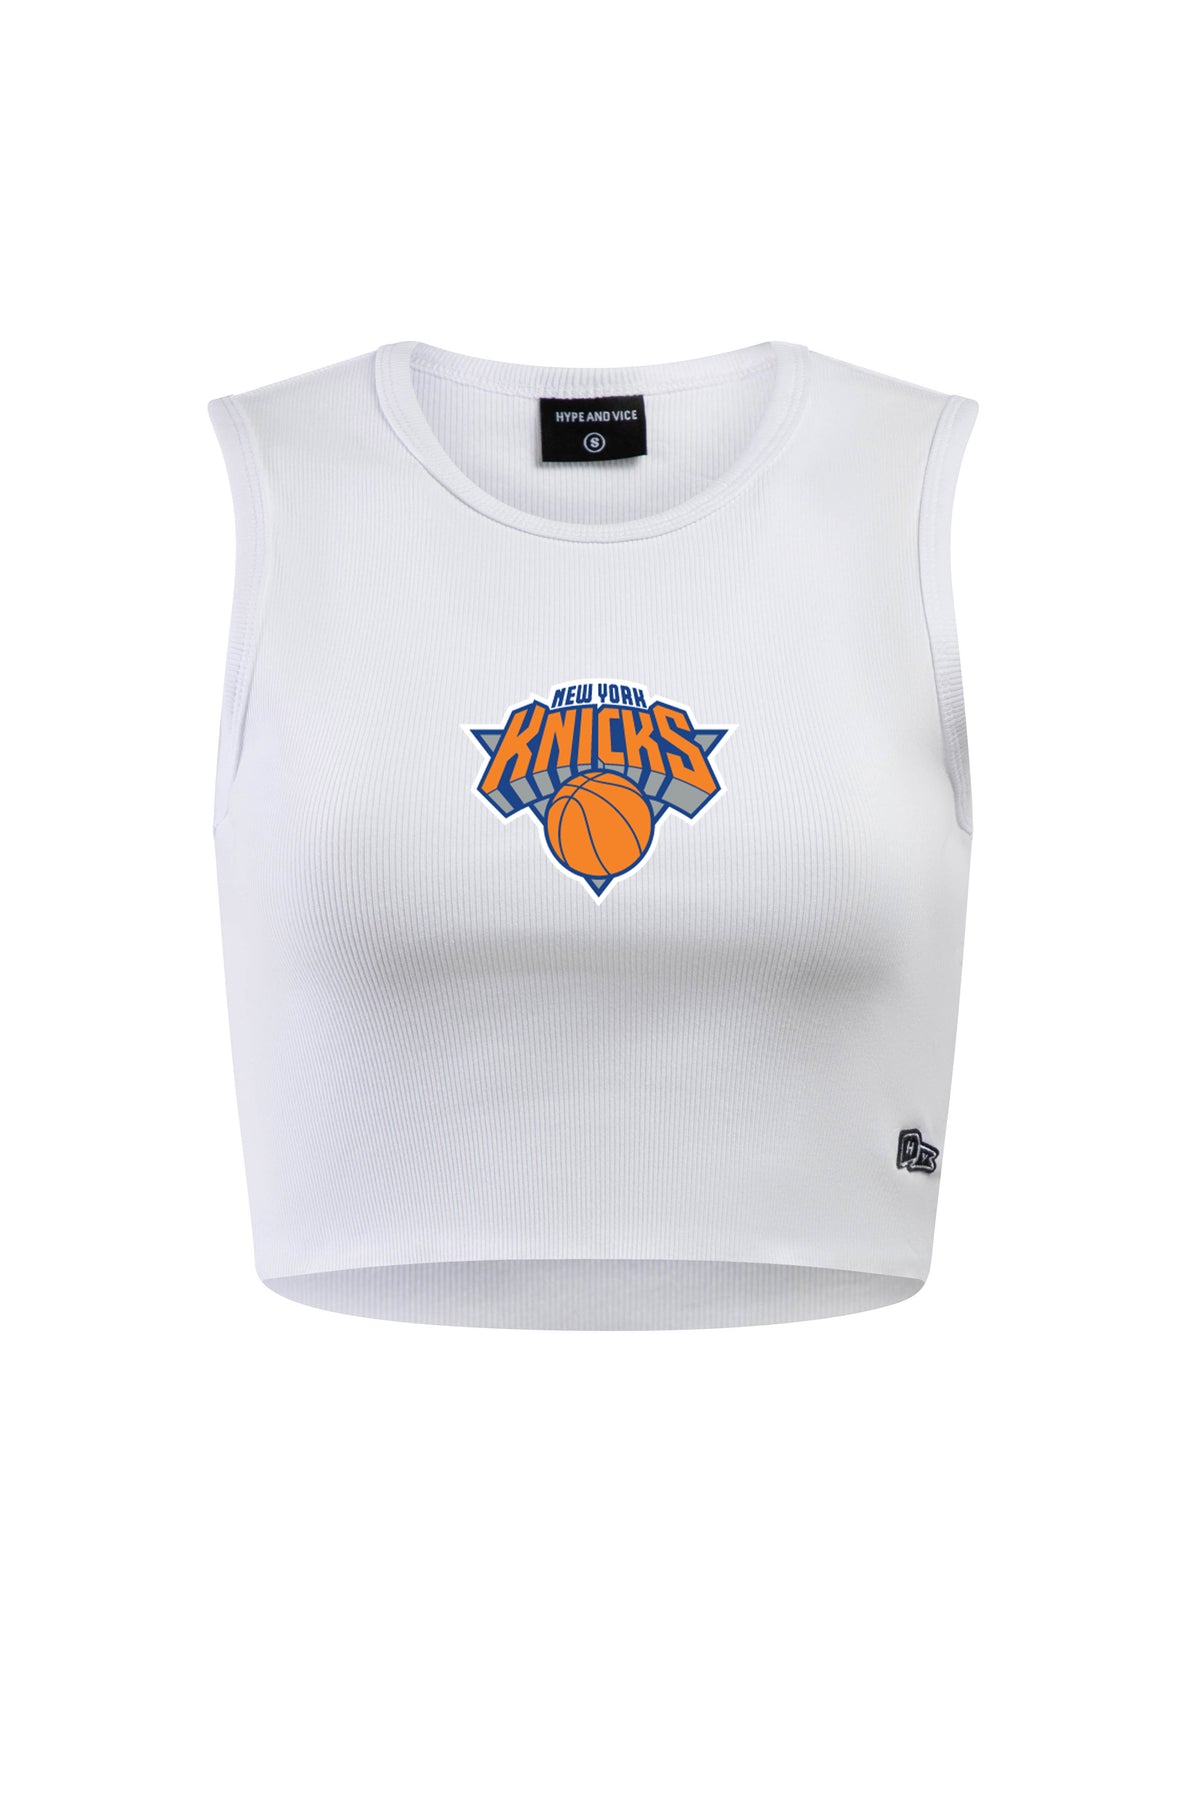 New York Knicks Cut Off Tank